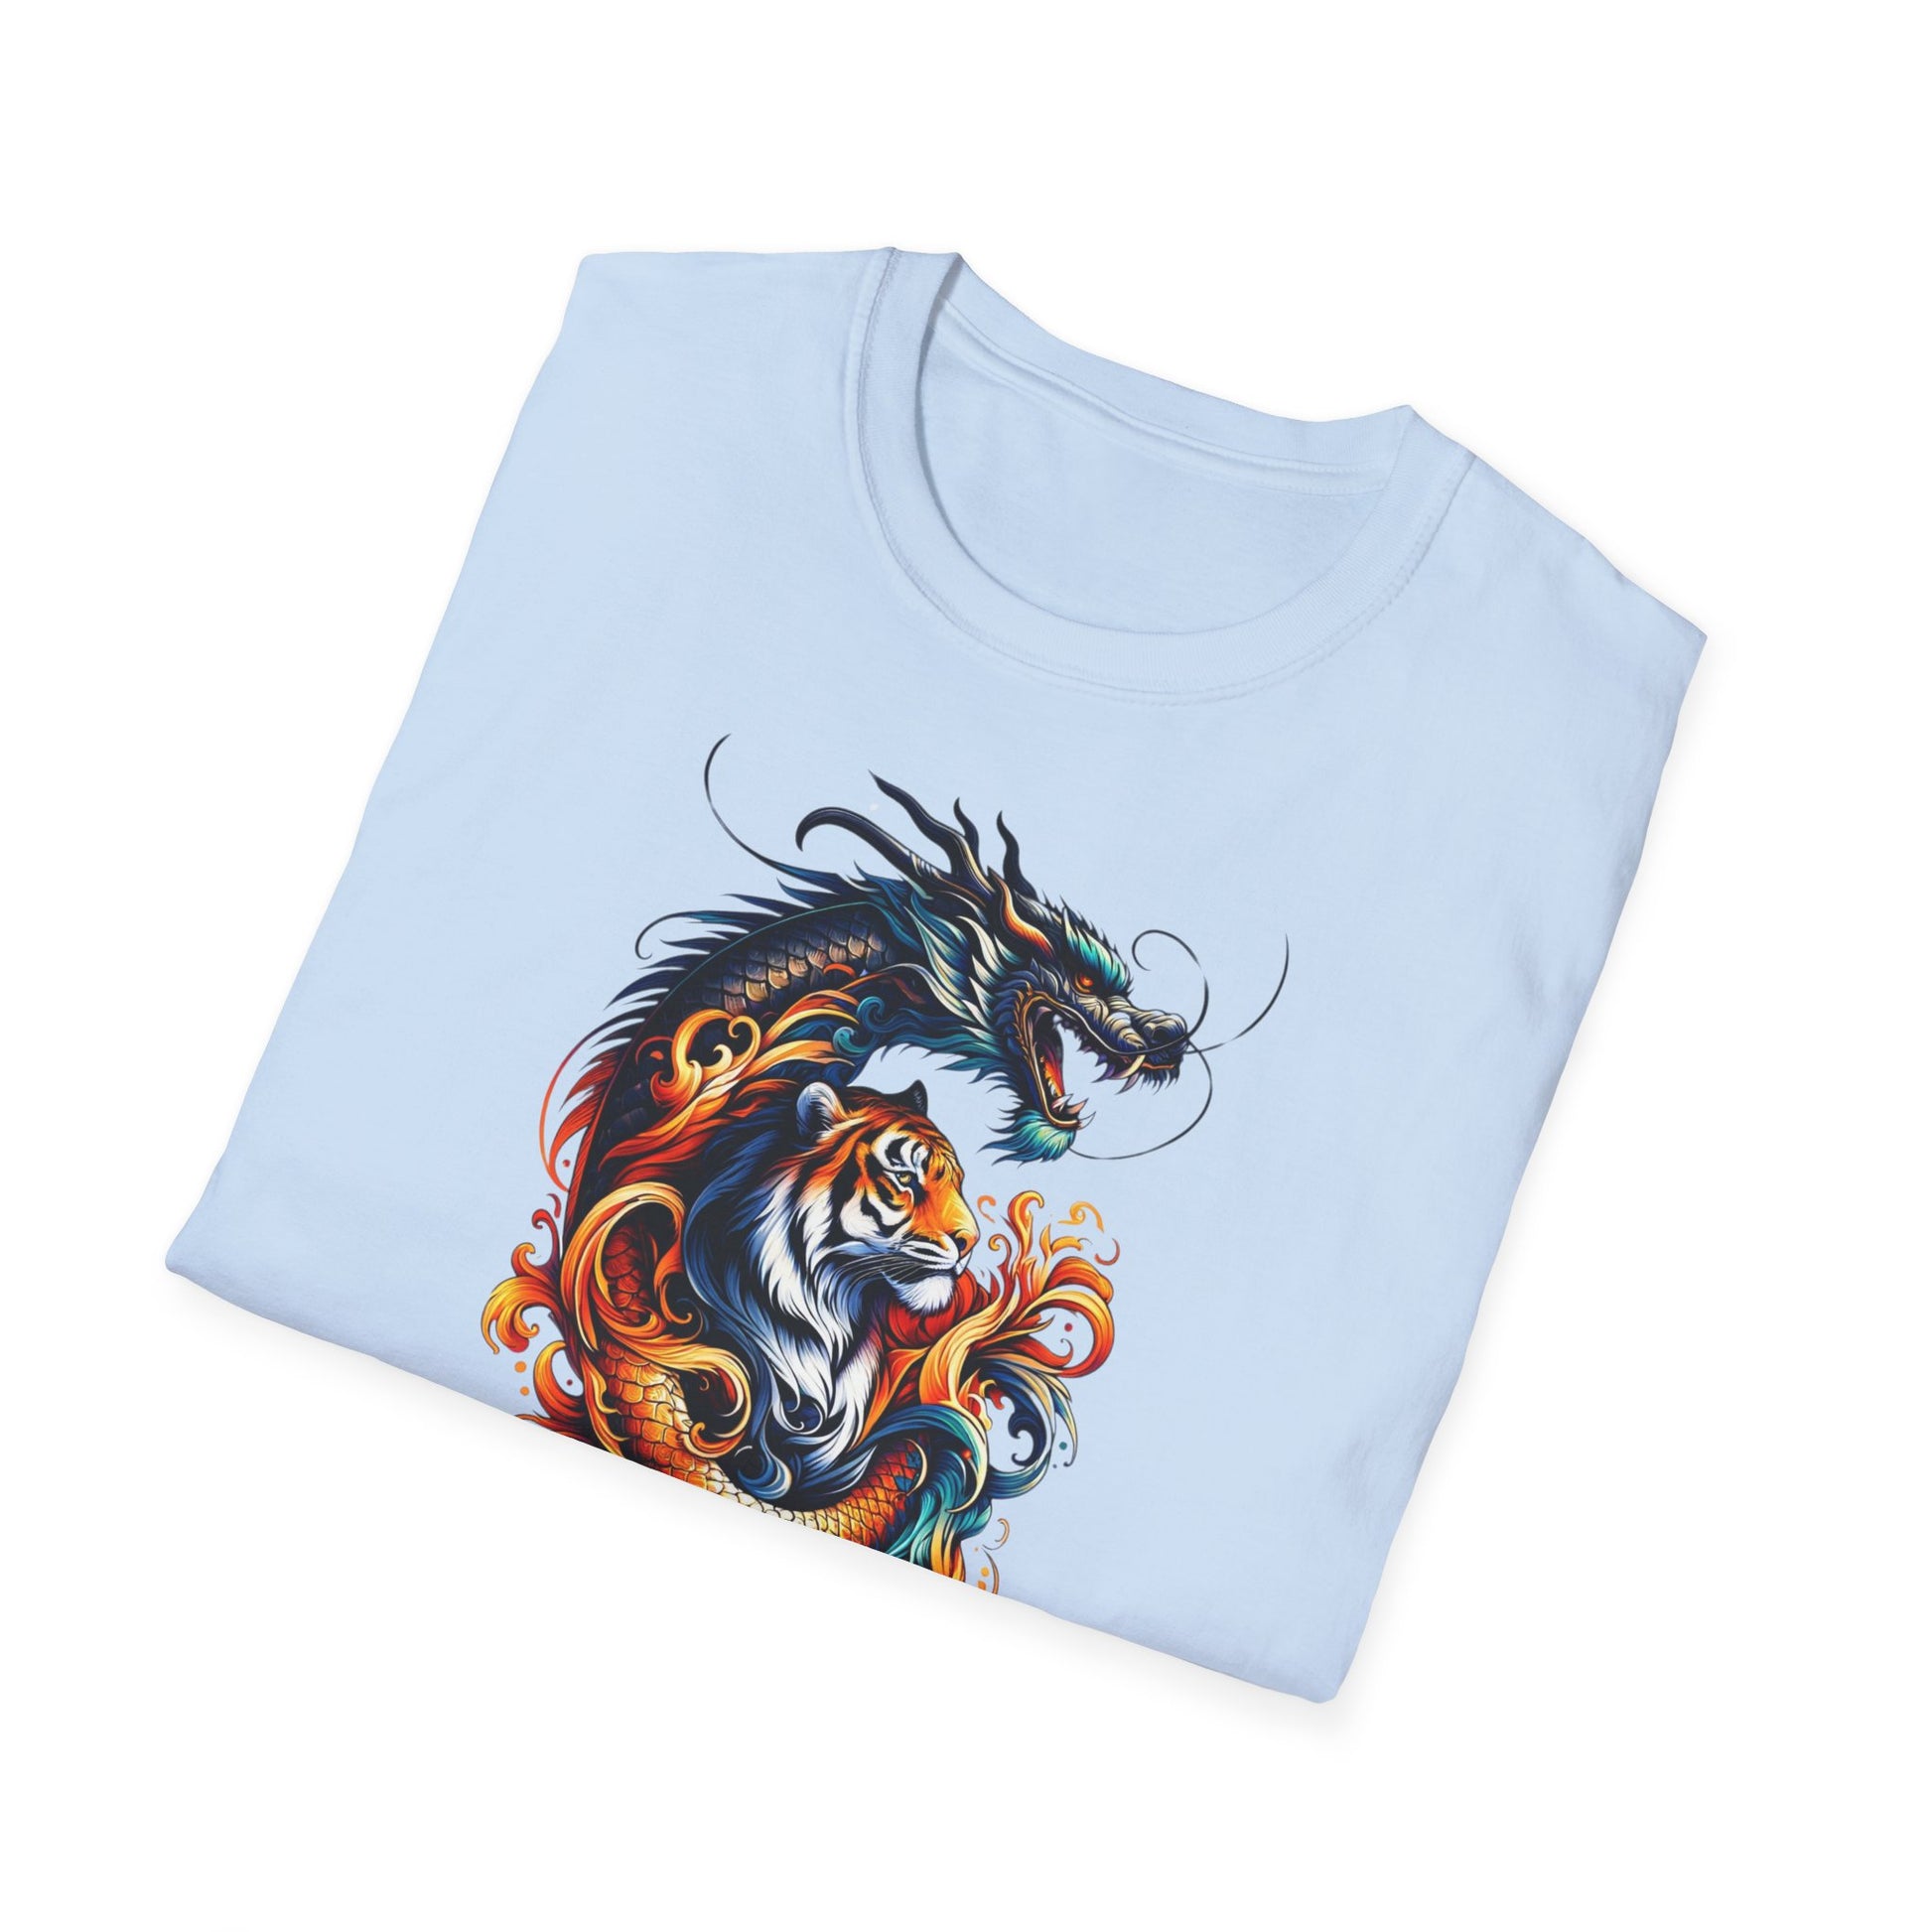 dragón camiseta del dragón camisetas exclusivas japonés templo japonés camiseta del templo japonés camisetas españolas tigre camiseta tigre camisetas únicas